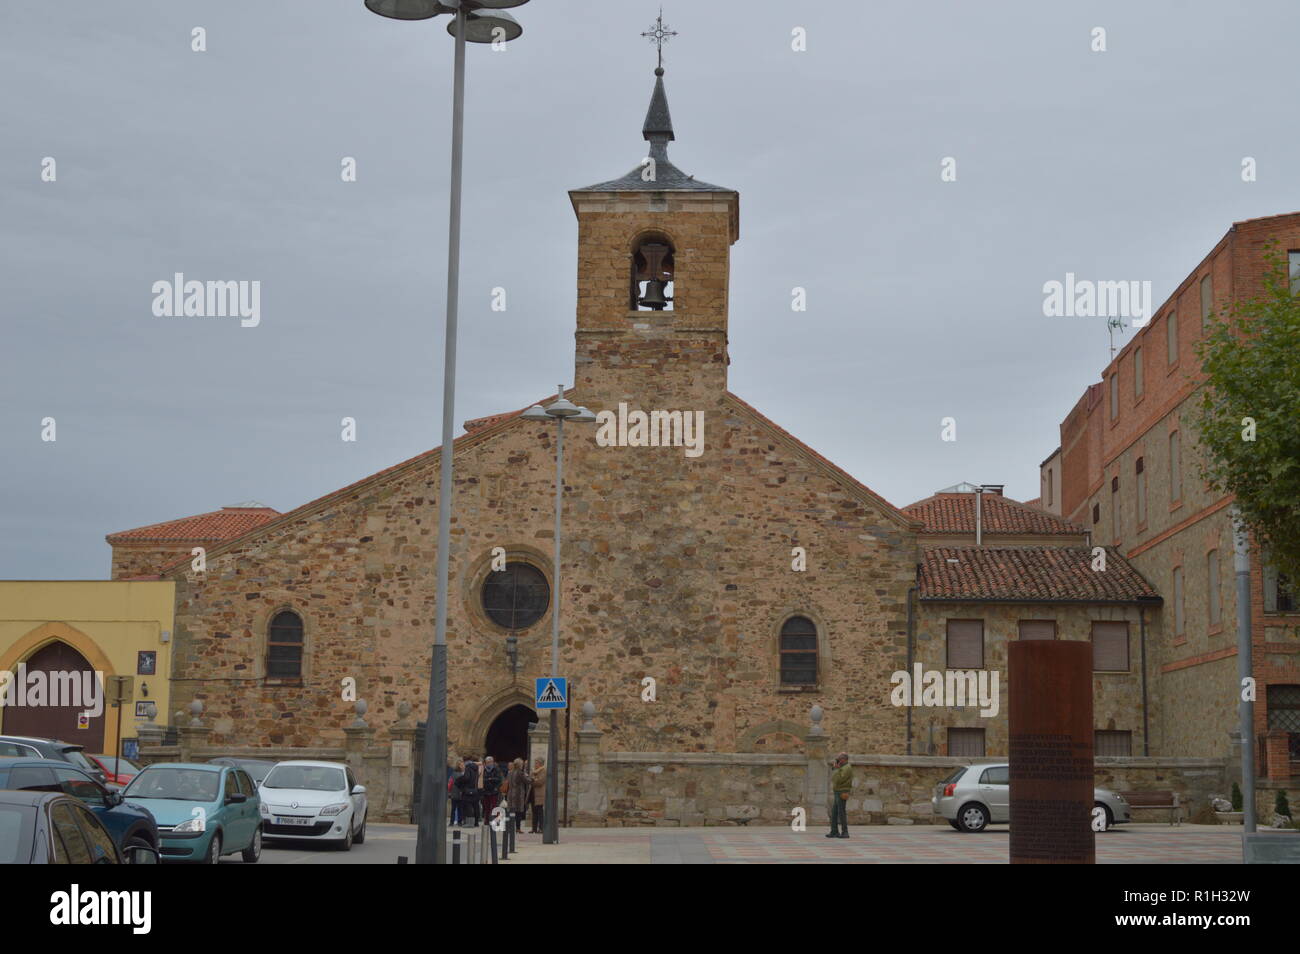 Main Facade Of The Church Of San Bartolome In Astorga. Architecture, History, Camino De Santiago, Travel, Street Photography. November 1, 2018. Astorg Stock Photo